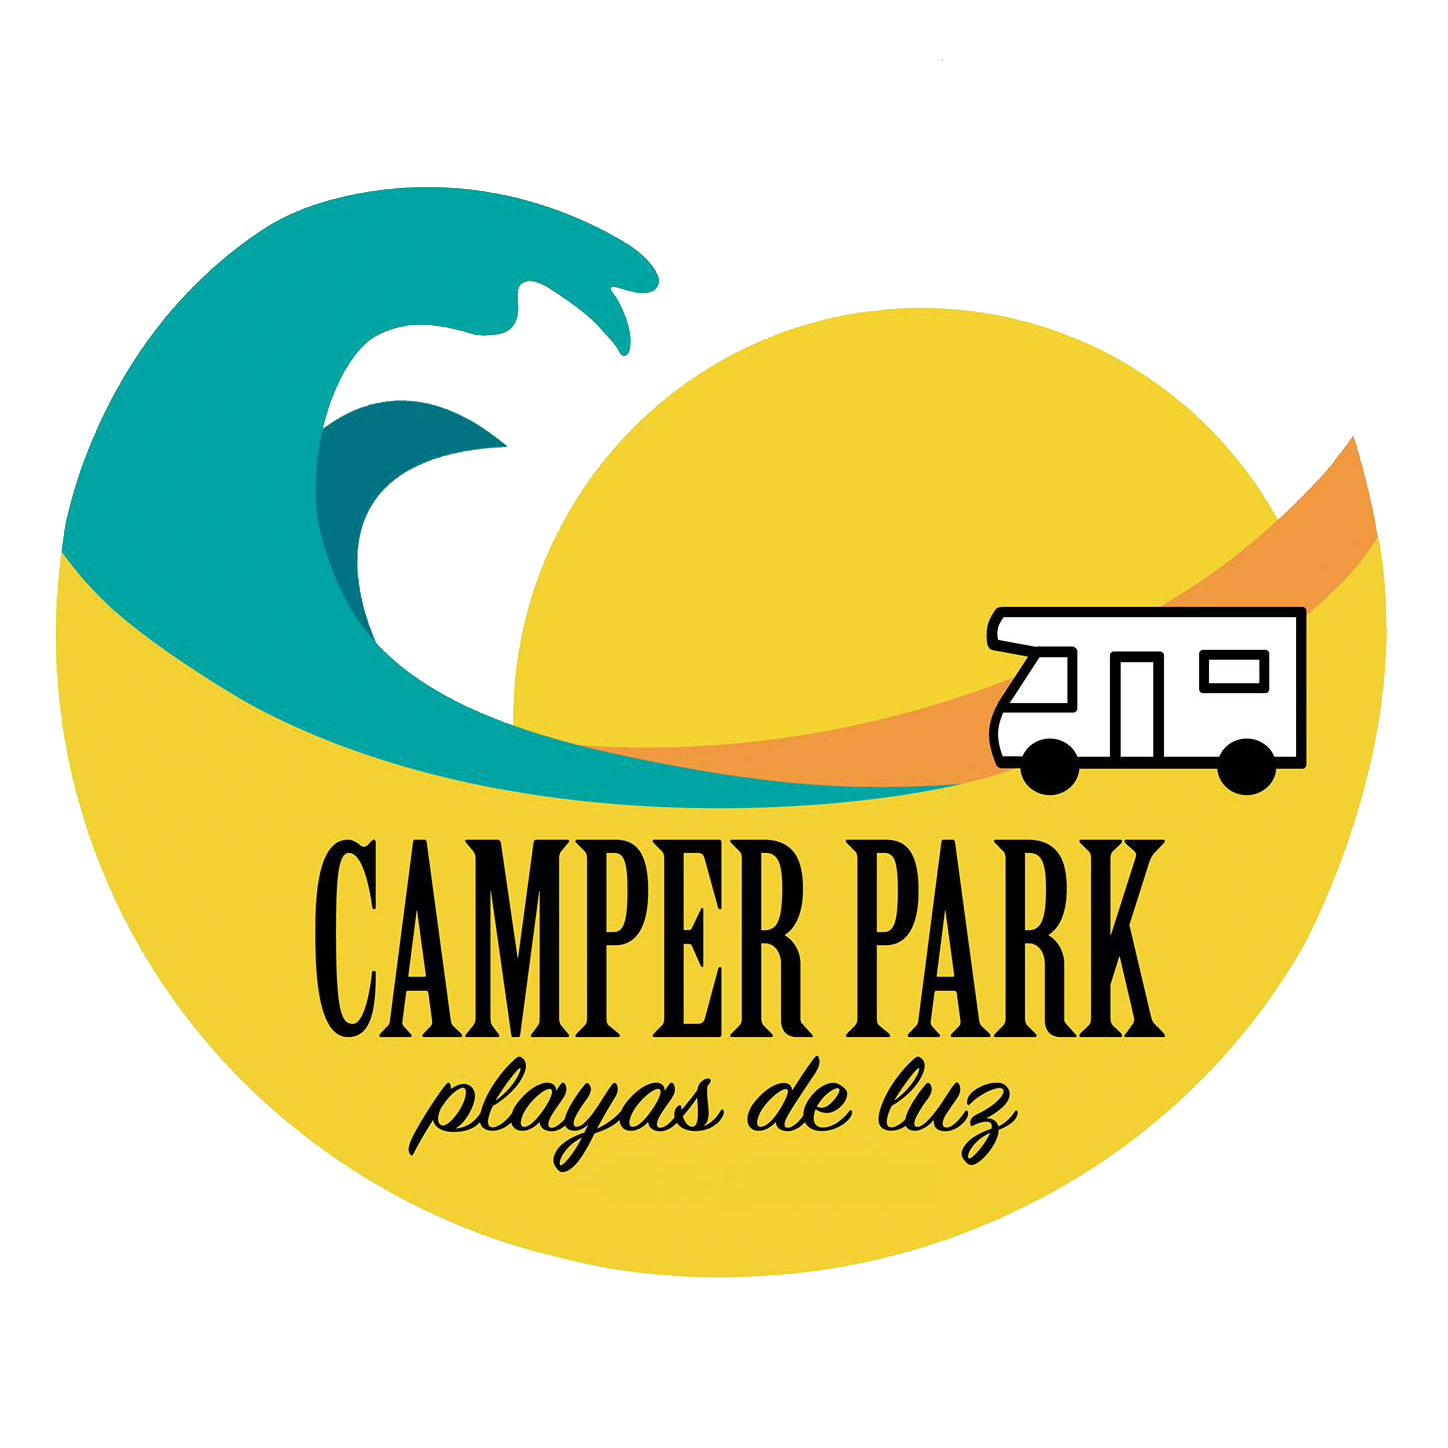 Camper Park Playas de Luz Overnight Camping Area